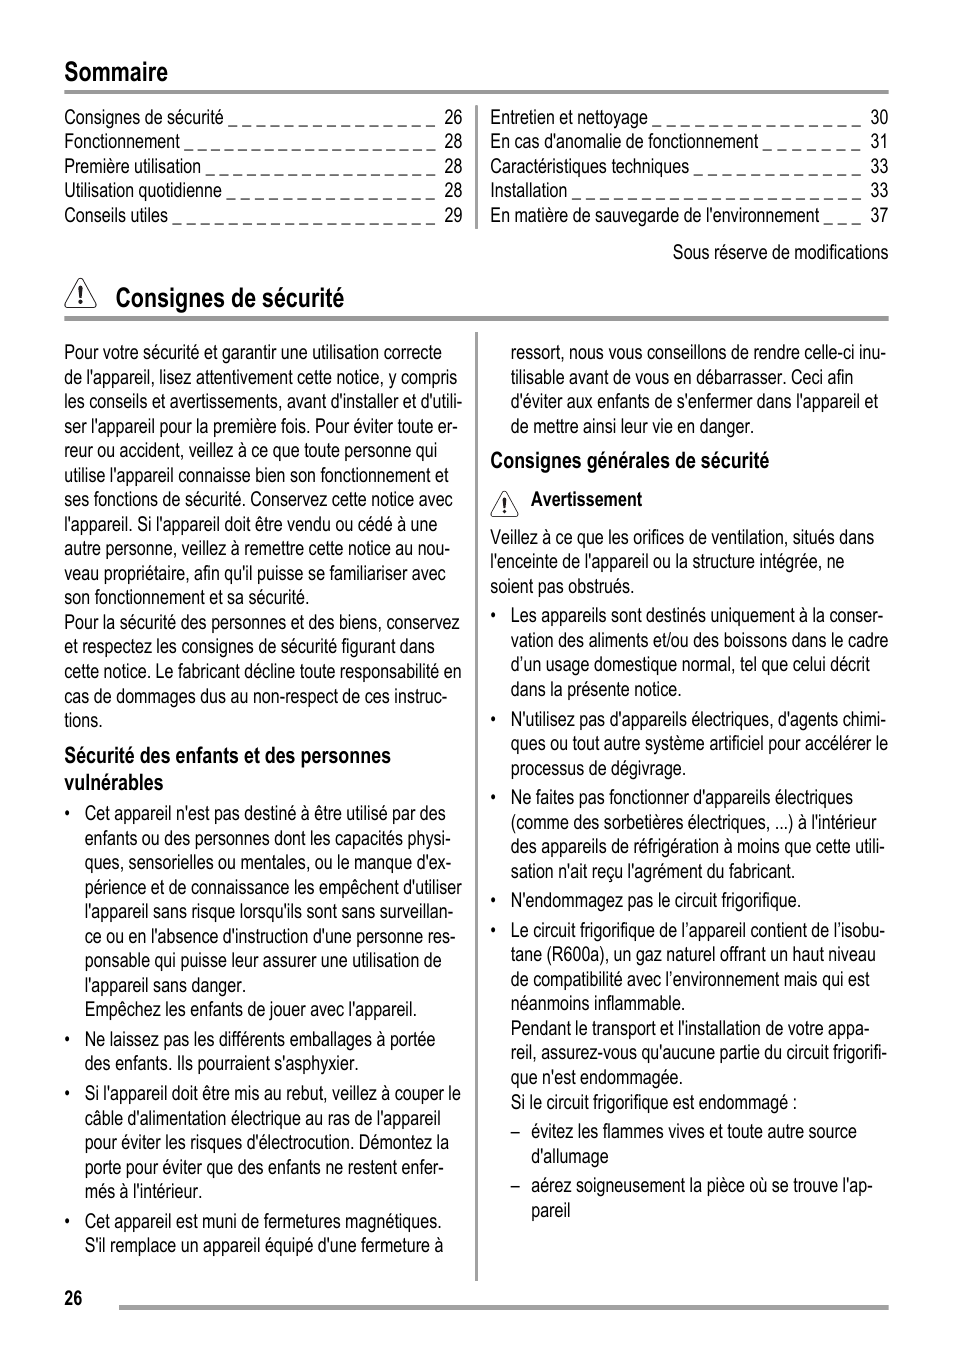 Sommaire, Consignes de sécurité | ZANKER KBA 17401 SK User Manual | Page 26 / 52